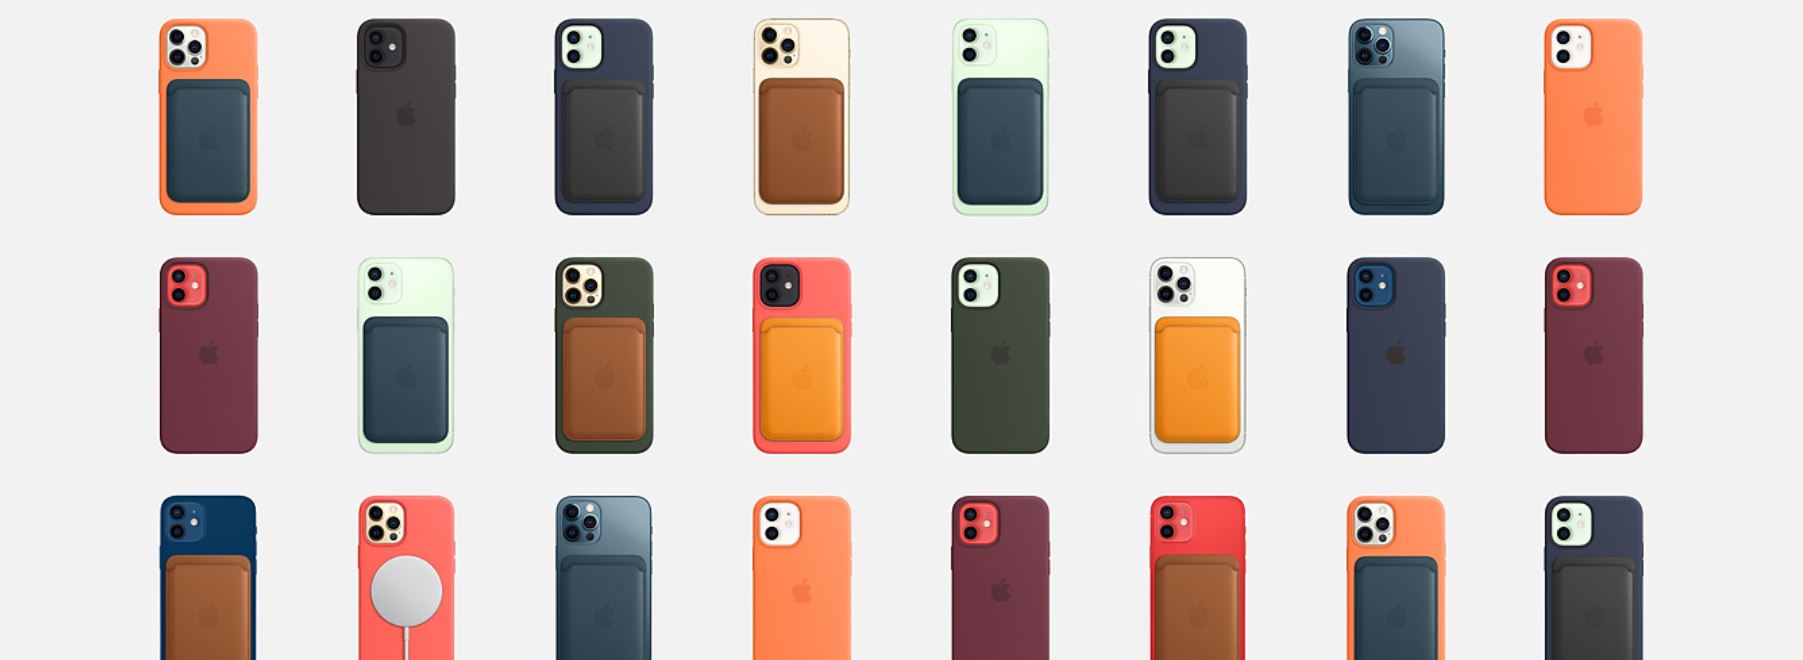 כיסוי סיליקון לאייפון 12 מיני עם iPhone 12 mini MagSafe - בצבעים מגוון